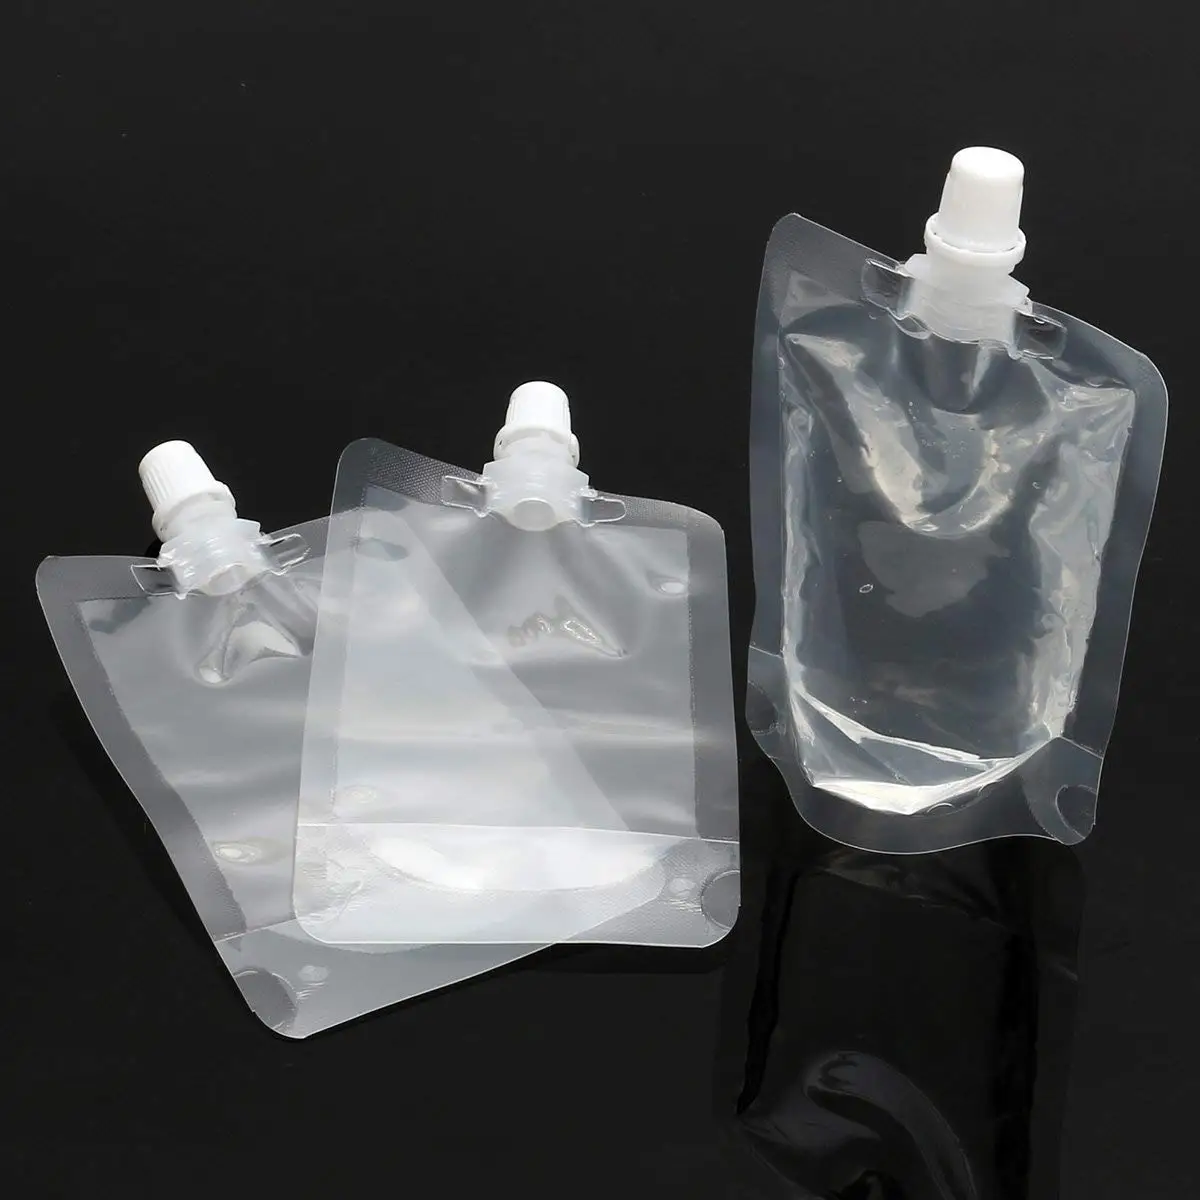 Cheap Plastic Pocket Flask, find Plastic Pocket Flask deals on line at ...